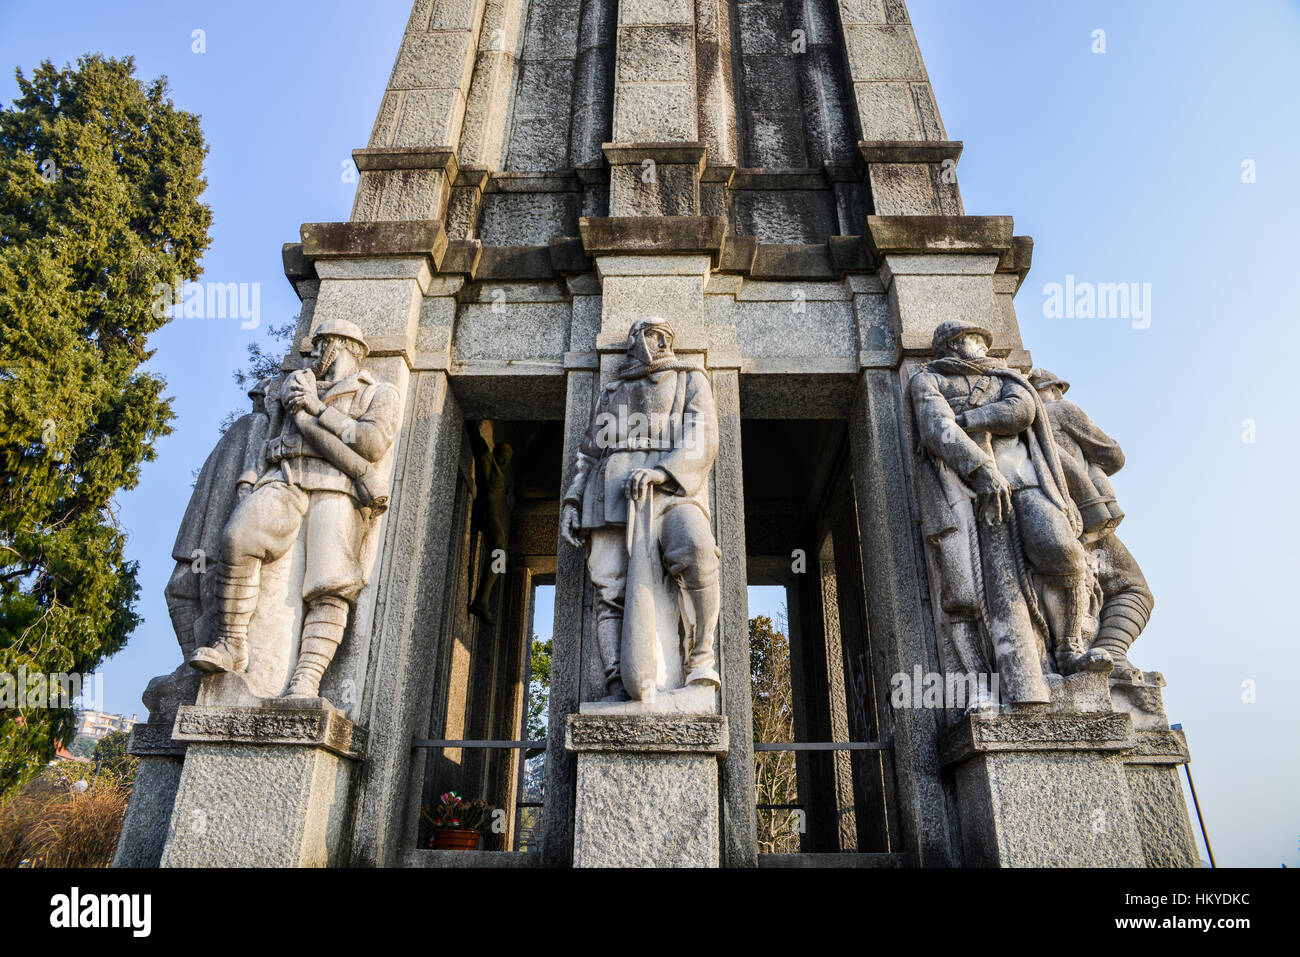 War memorial in Pallanza, Italy Stock Photo